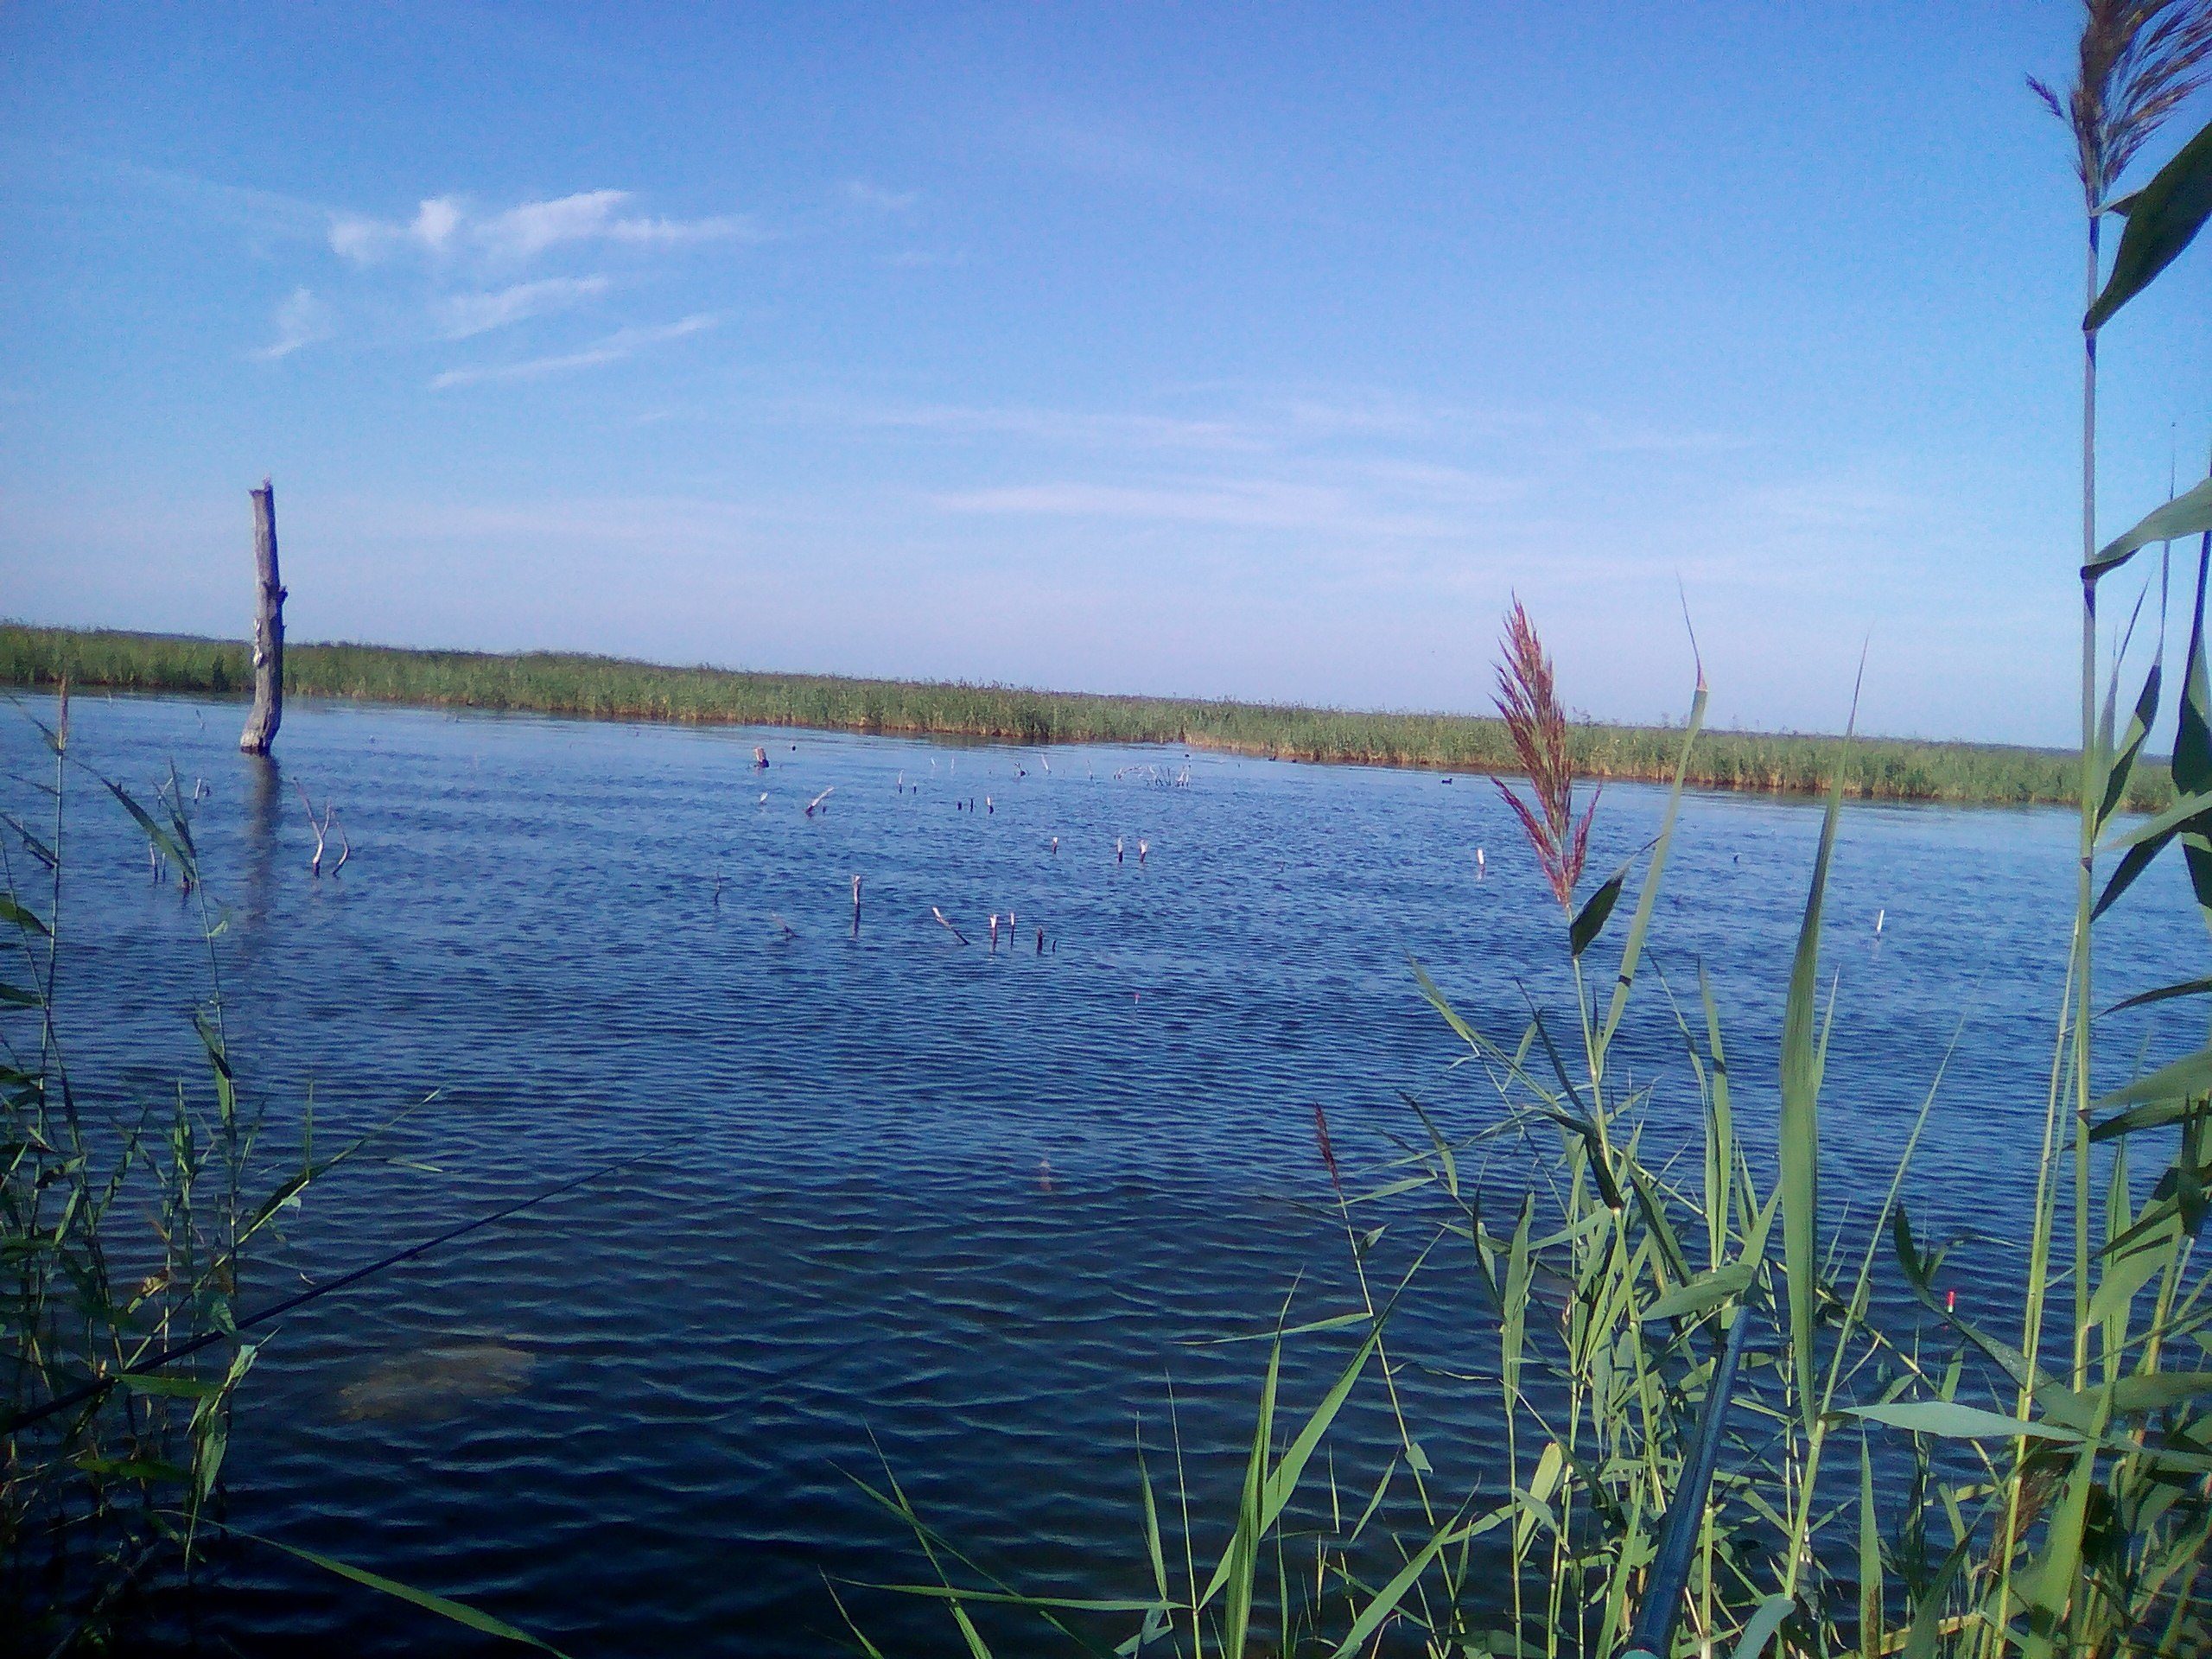 соленые озера челябинской области